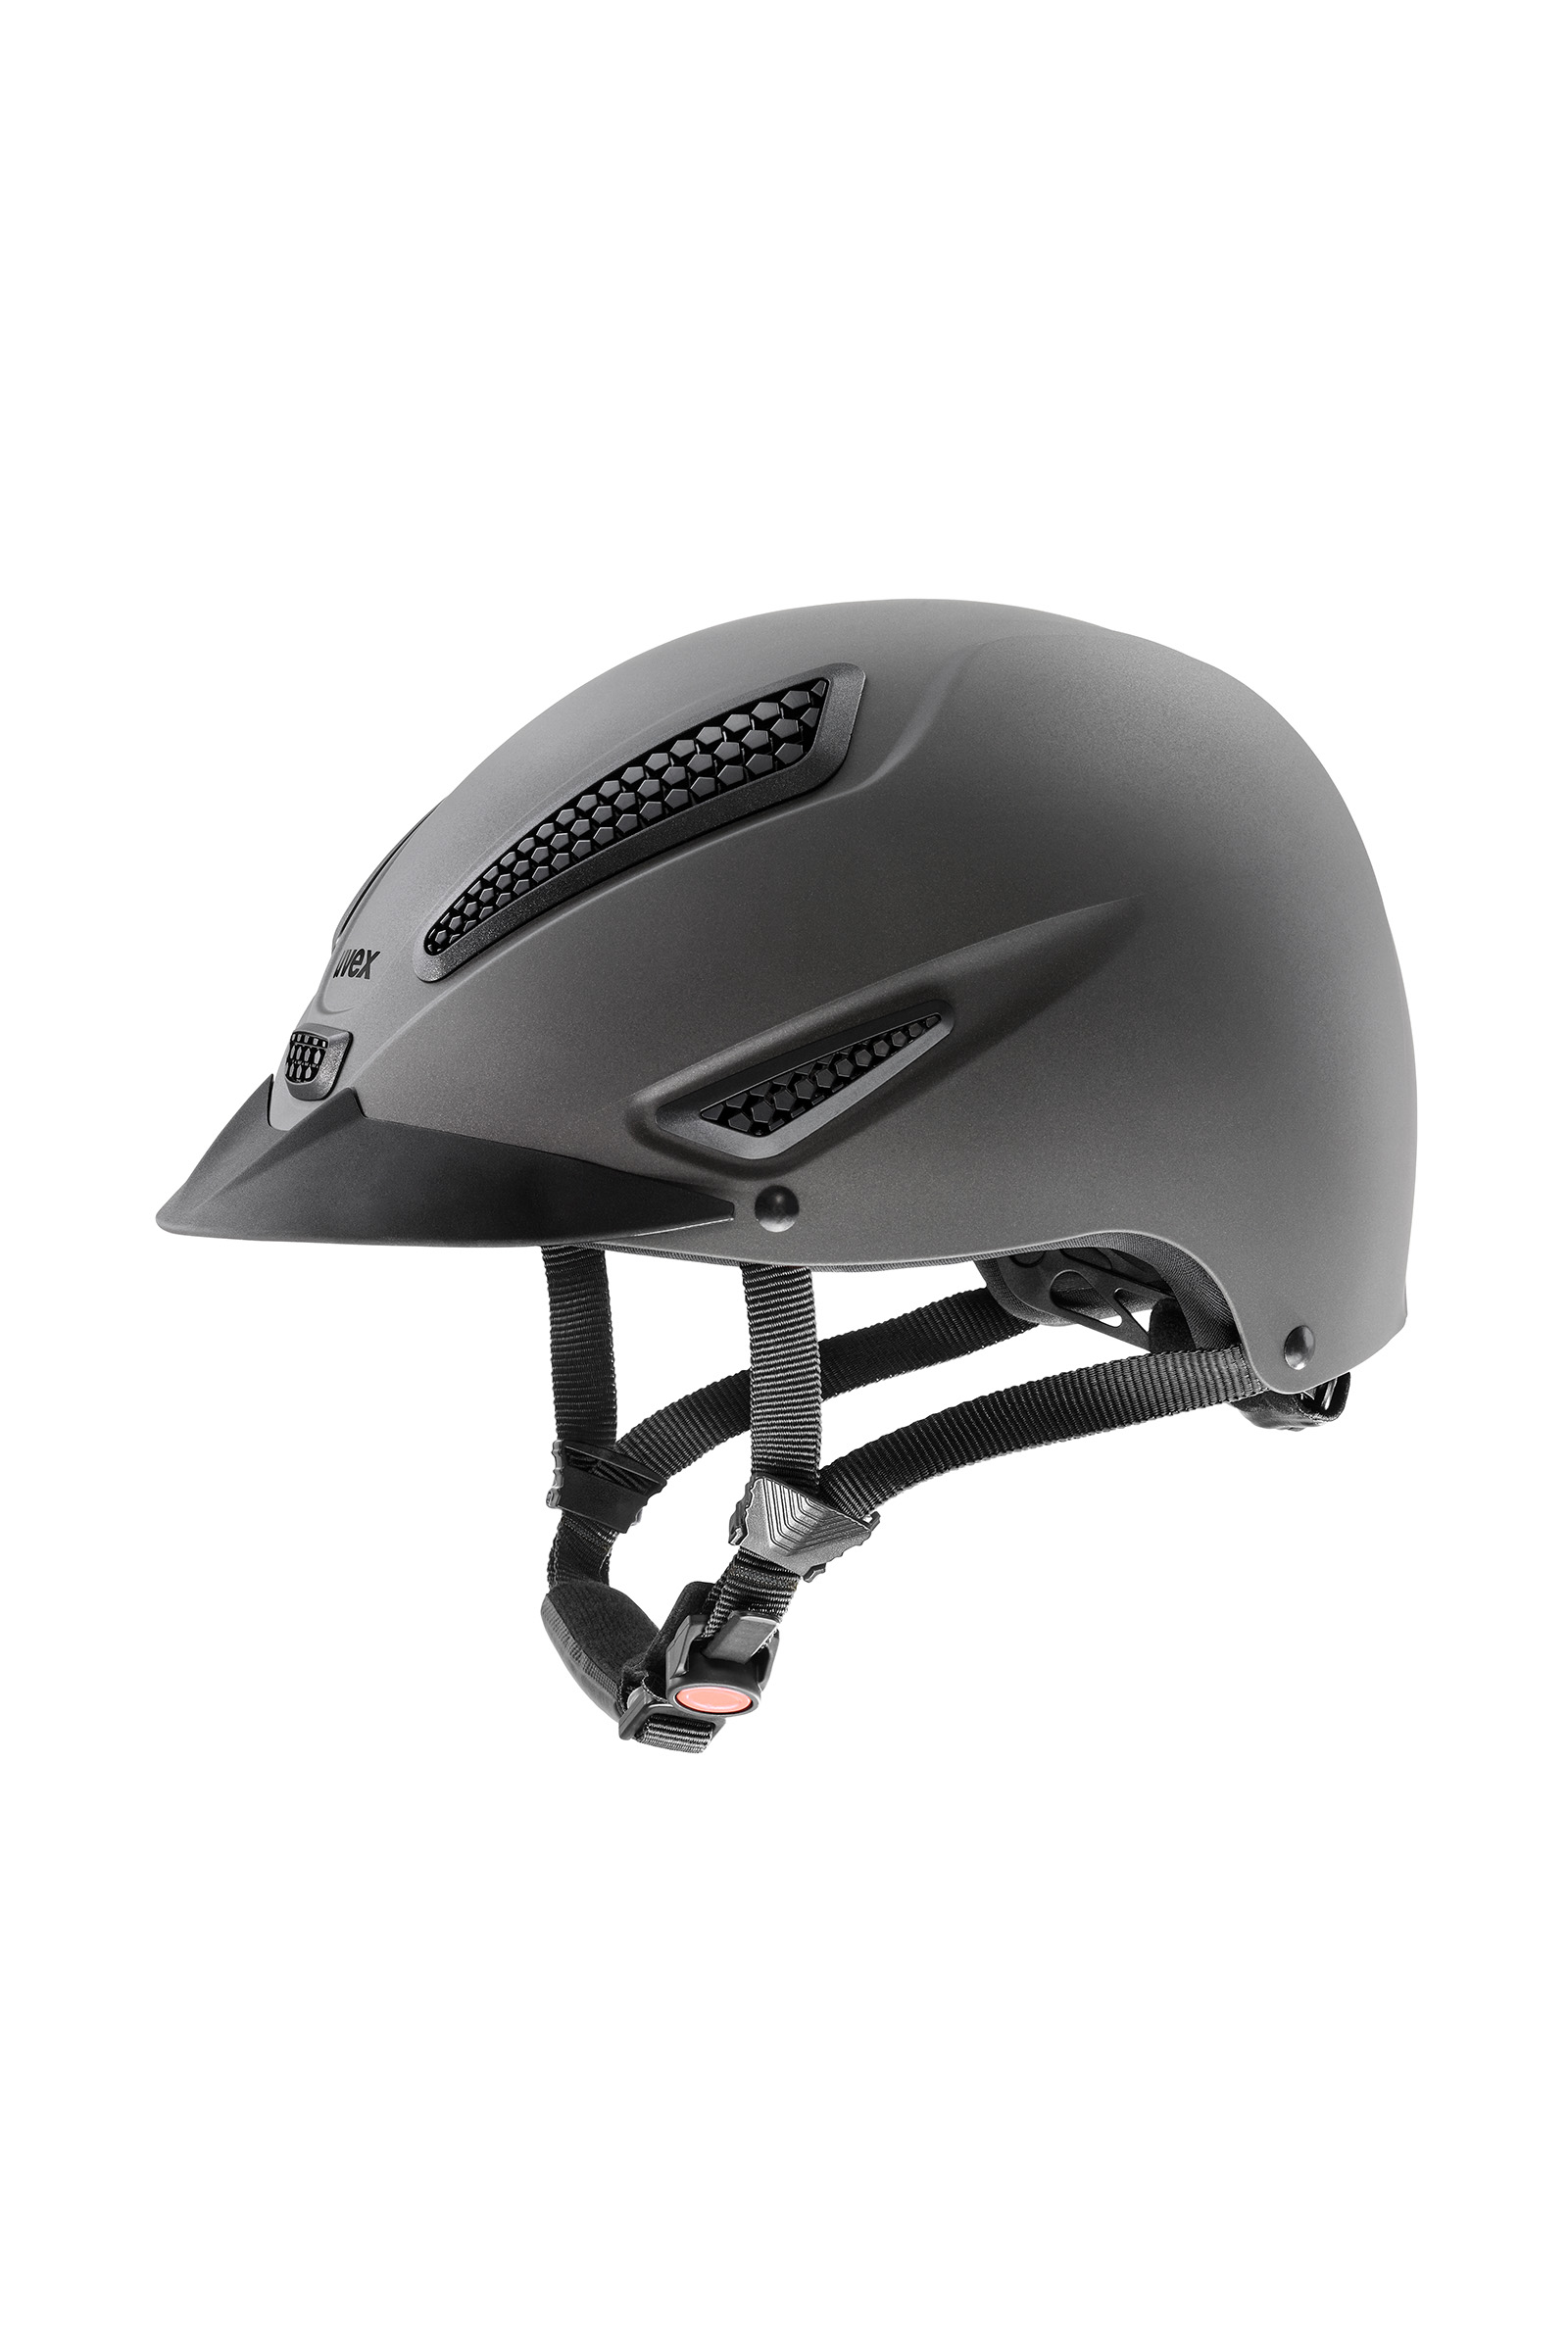 postkantoor Streven een experiment doen Buy uvex perfexxion II Riding Helmet | horze.com